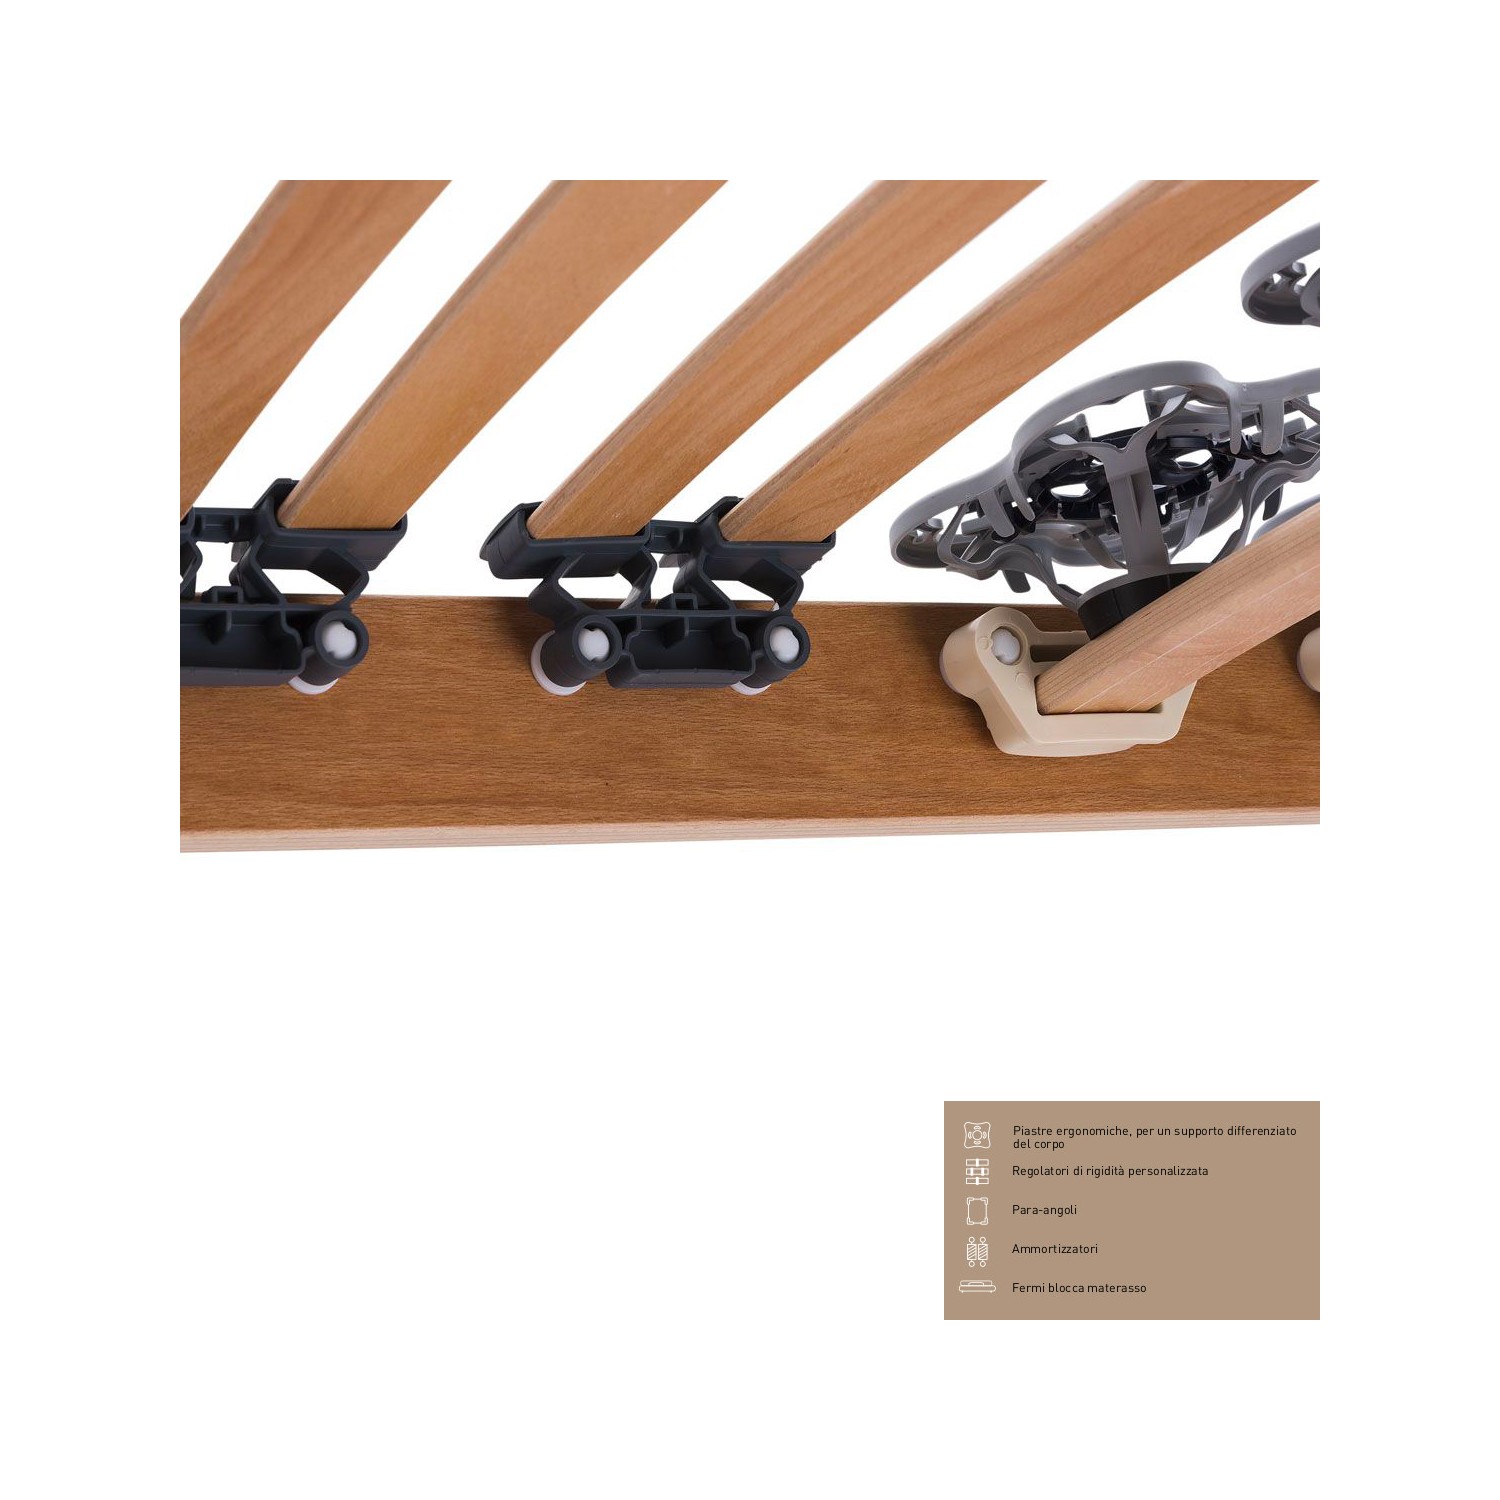 Rete Magniflex ERGO DUE FISSA cm 90 x 190/195/200 piastre ergonomiche, regolatori di rigidità doghe legno